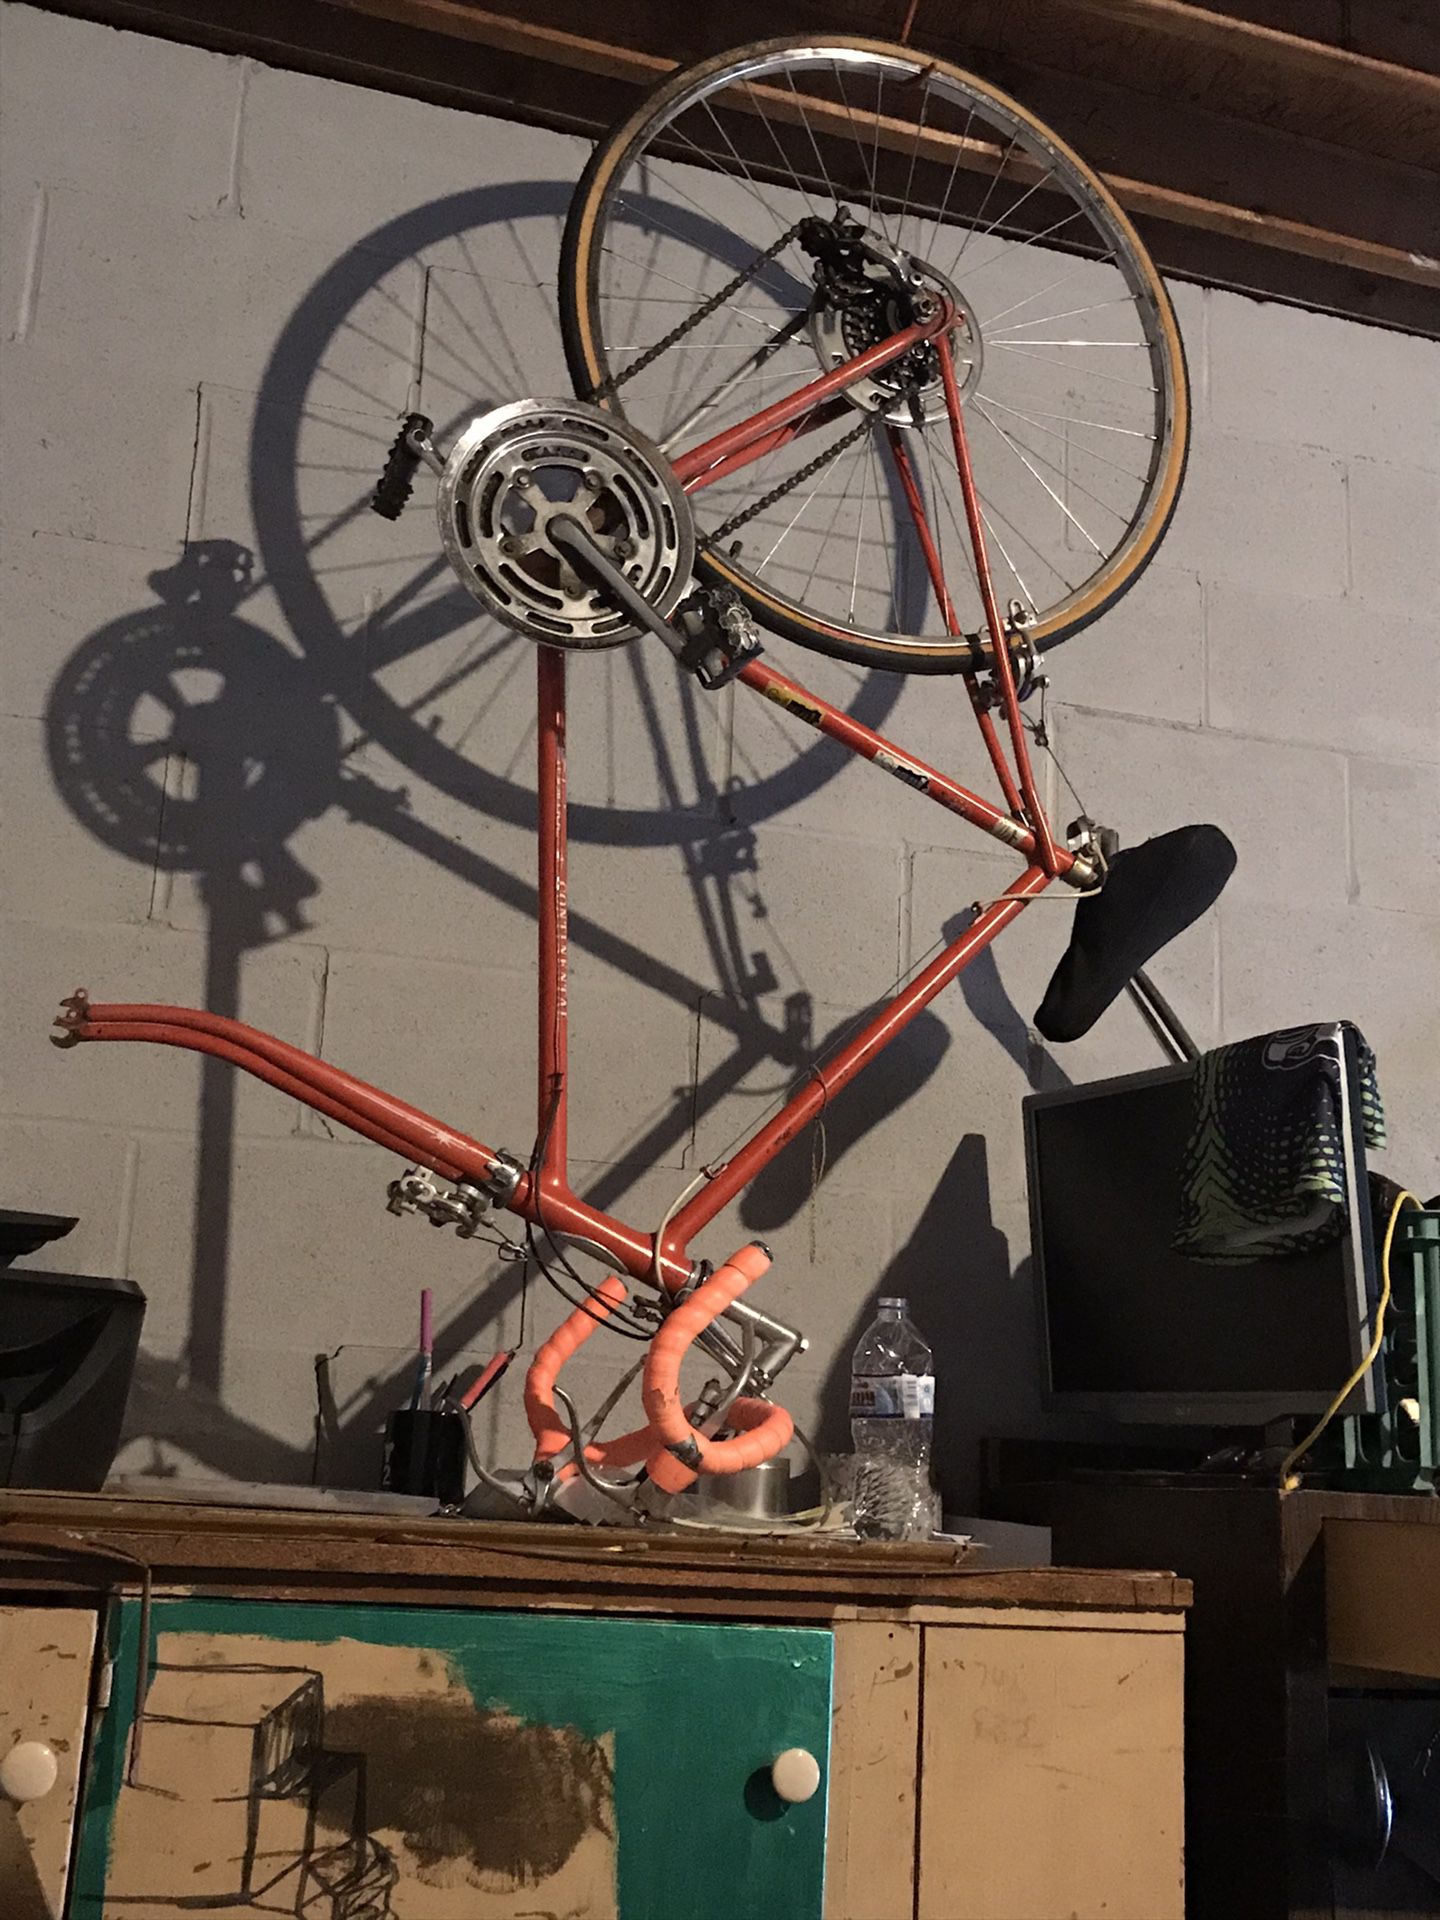 Contennial Schwinn Bike Missing Tire